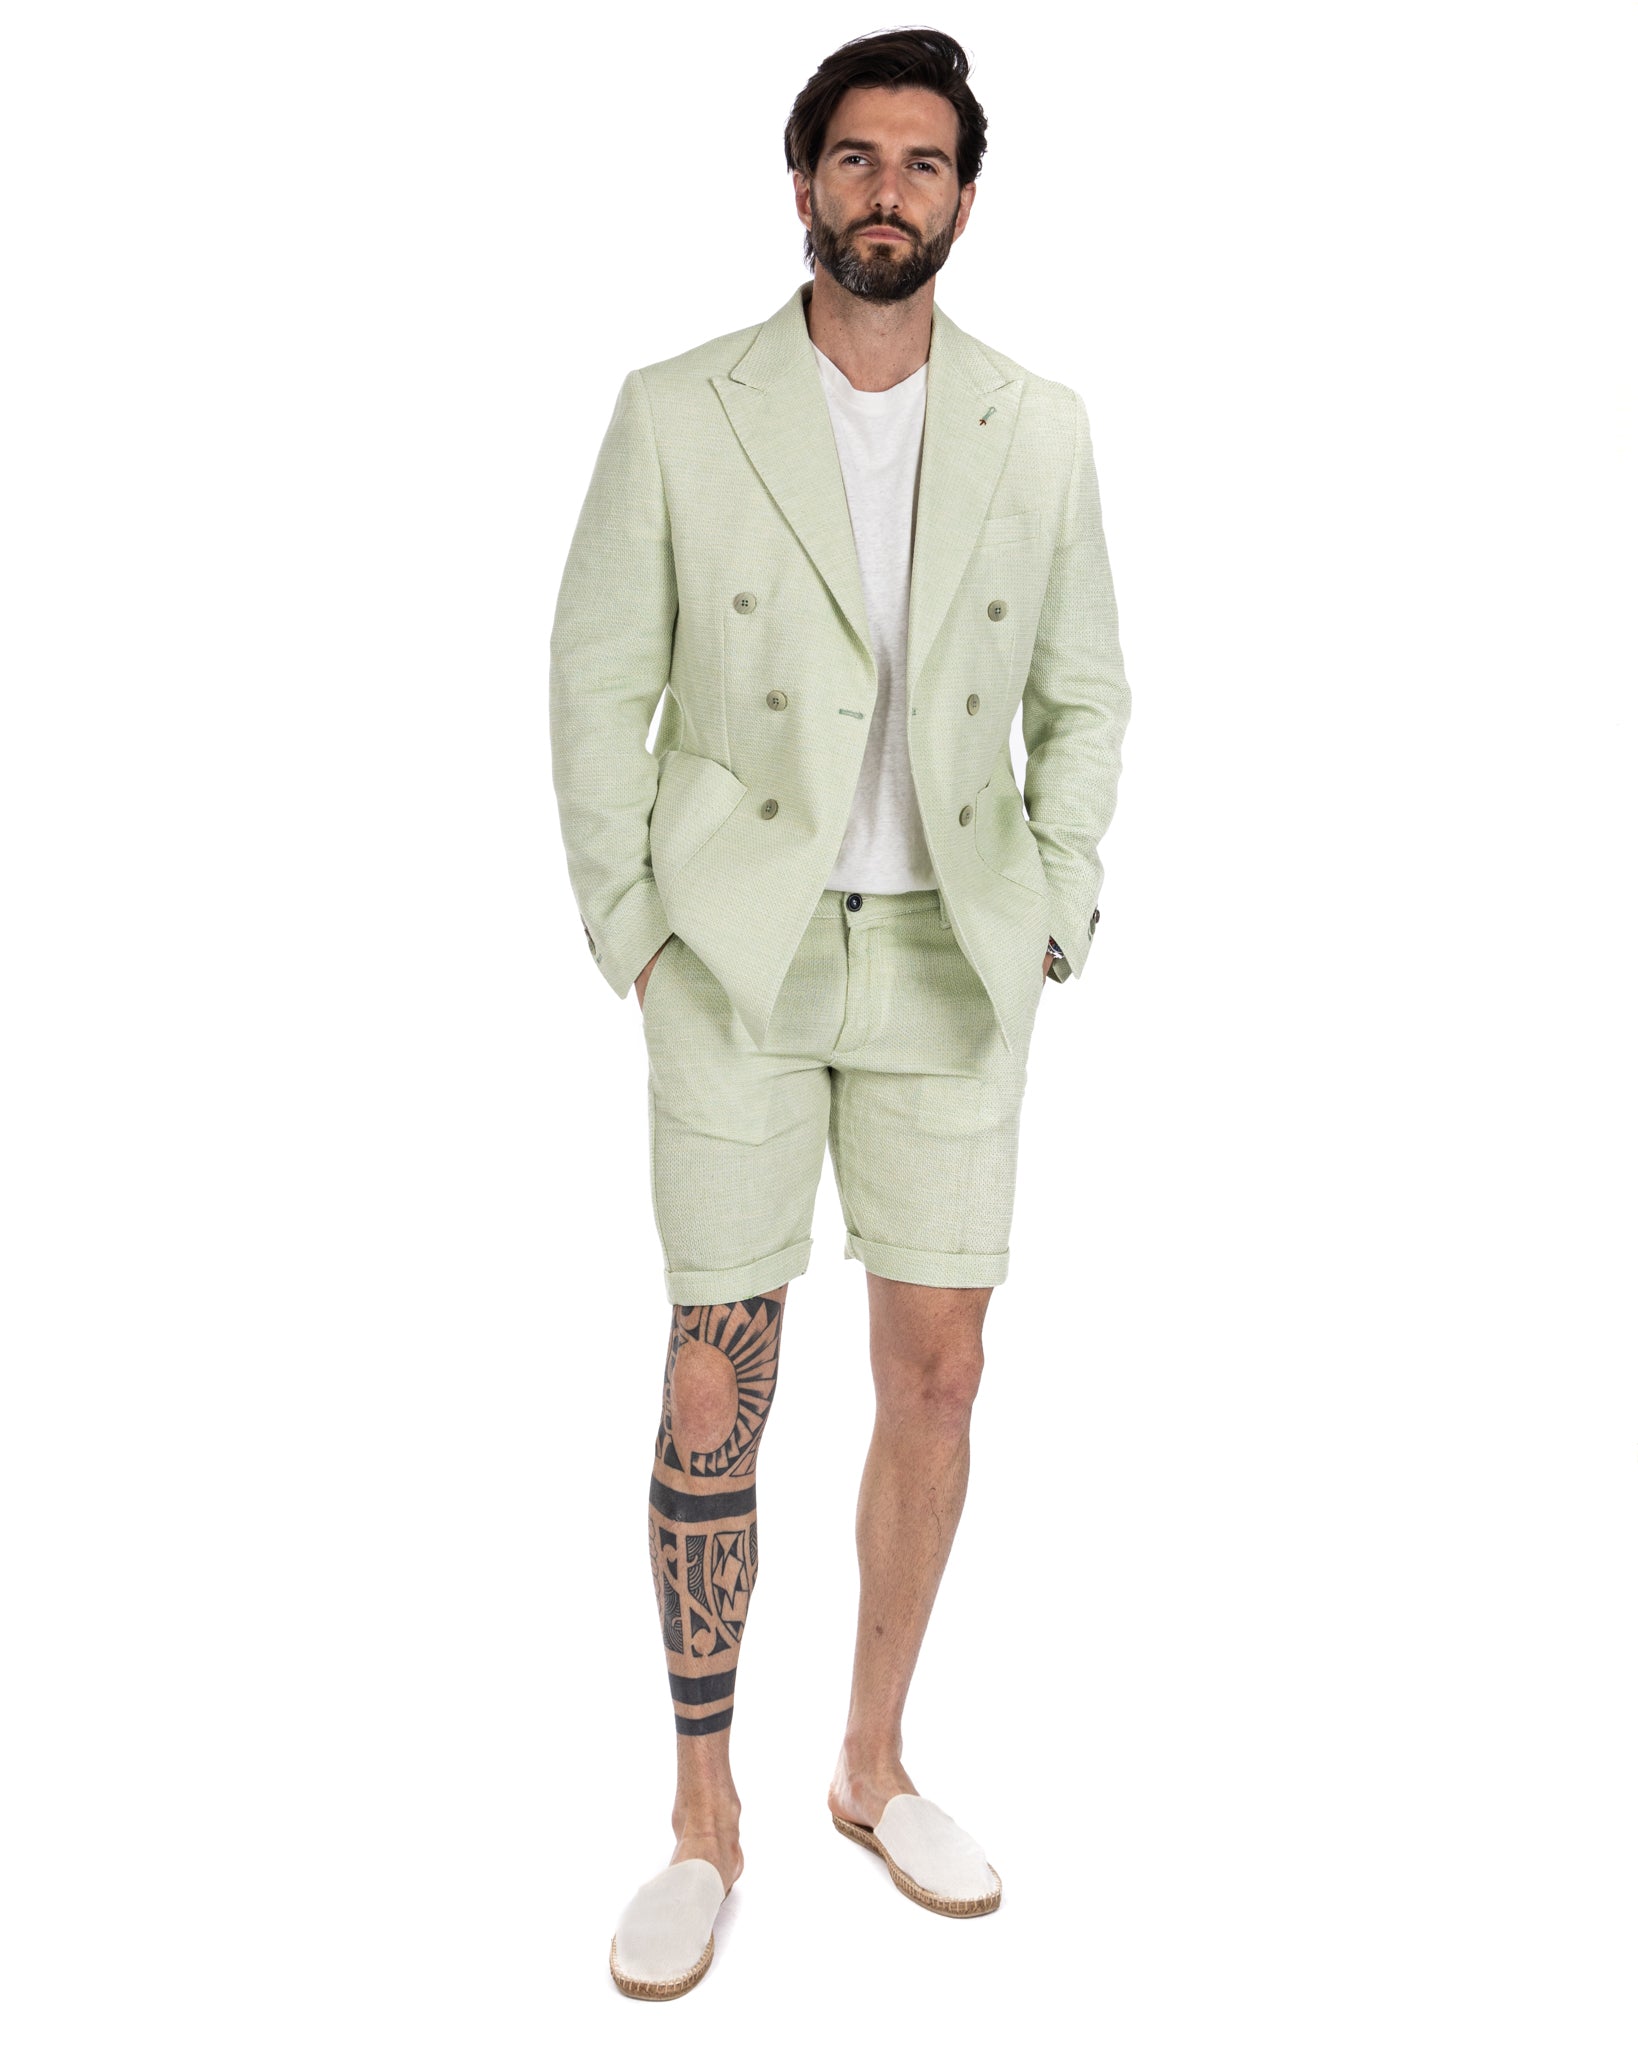 Leuca - green linen and cotton Bermuda shorts